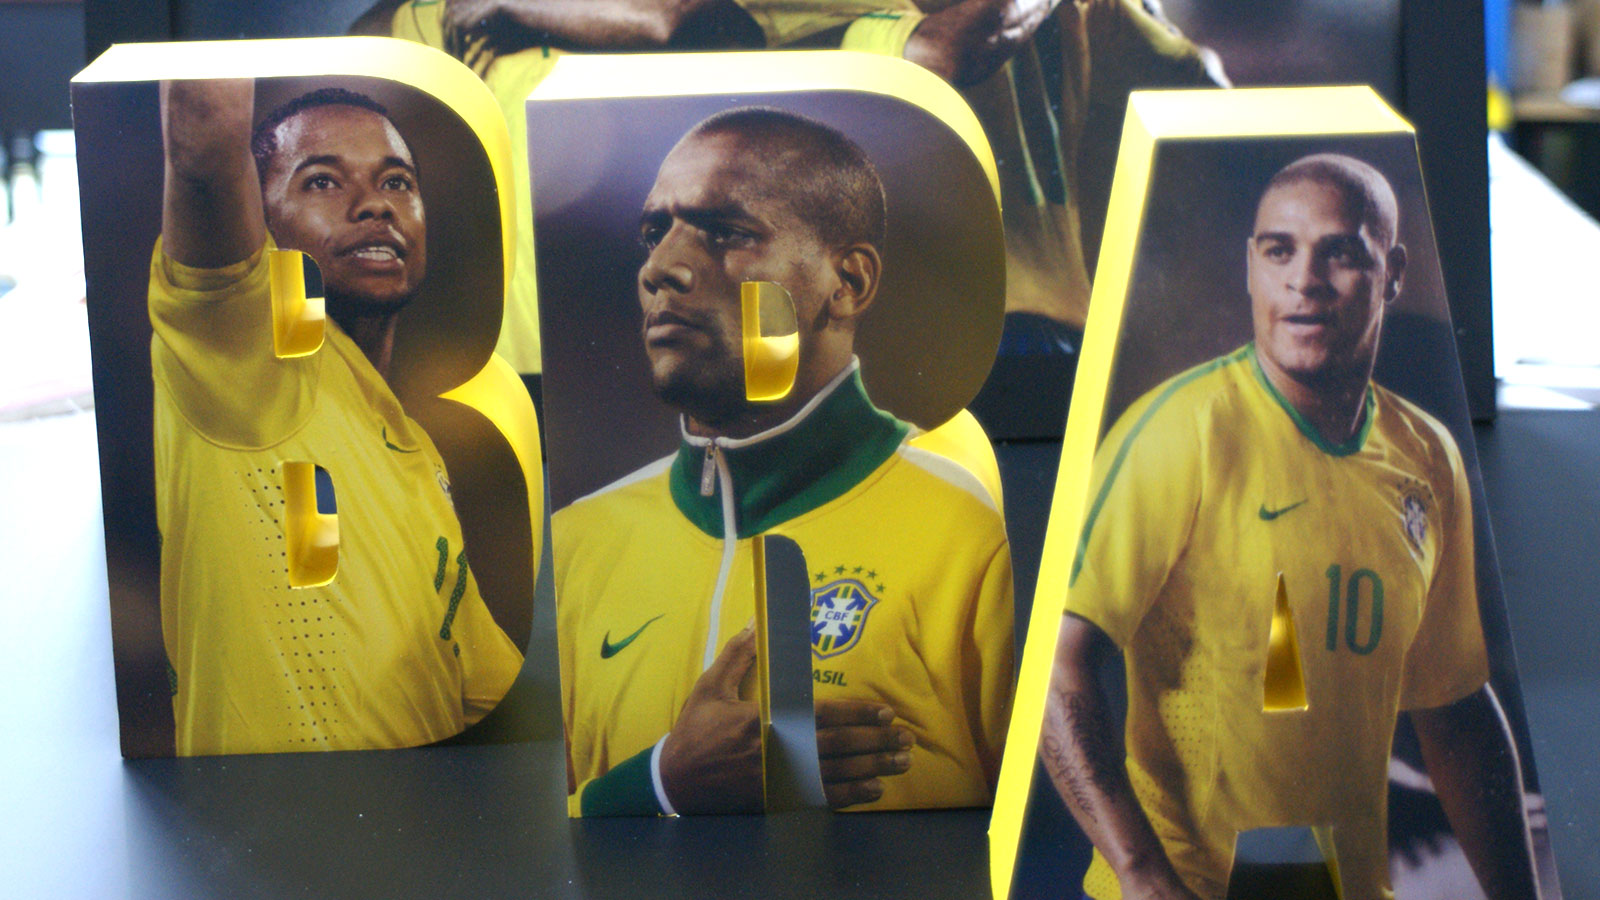 Litere volumetrice având pe feţe imagini ale jucătorilor de fotbal brazilieni